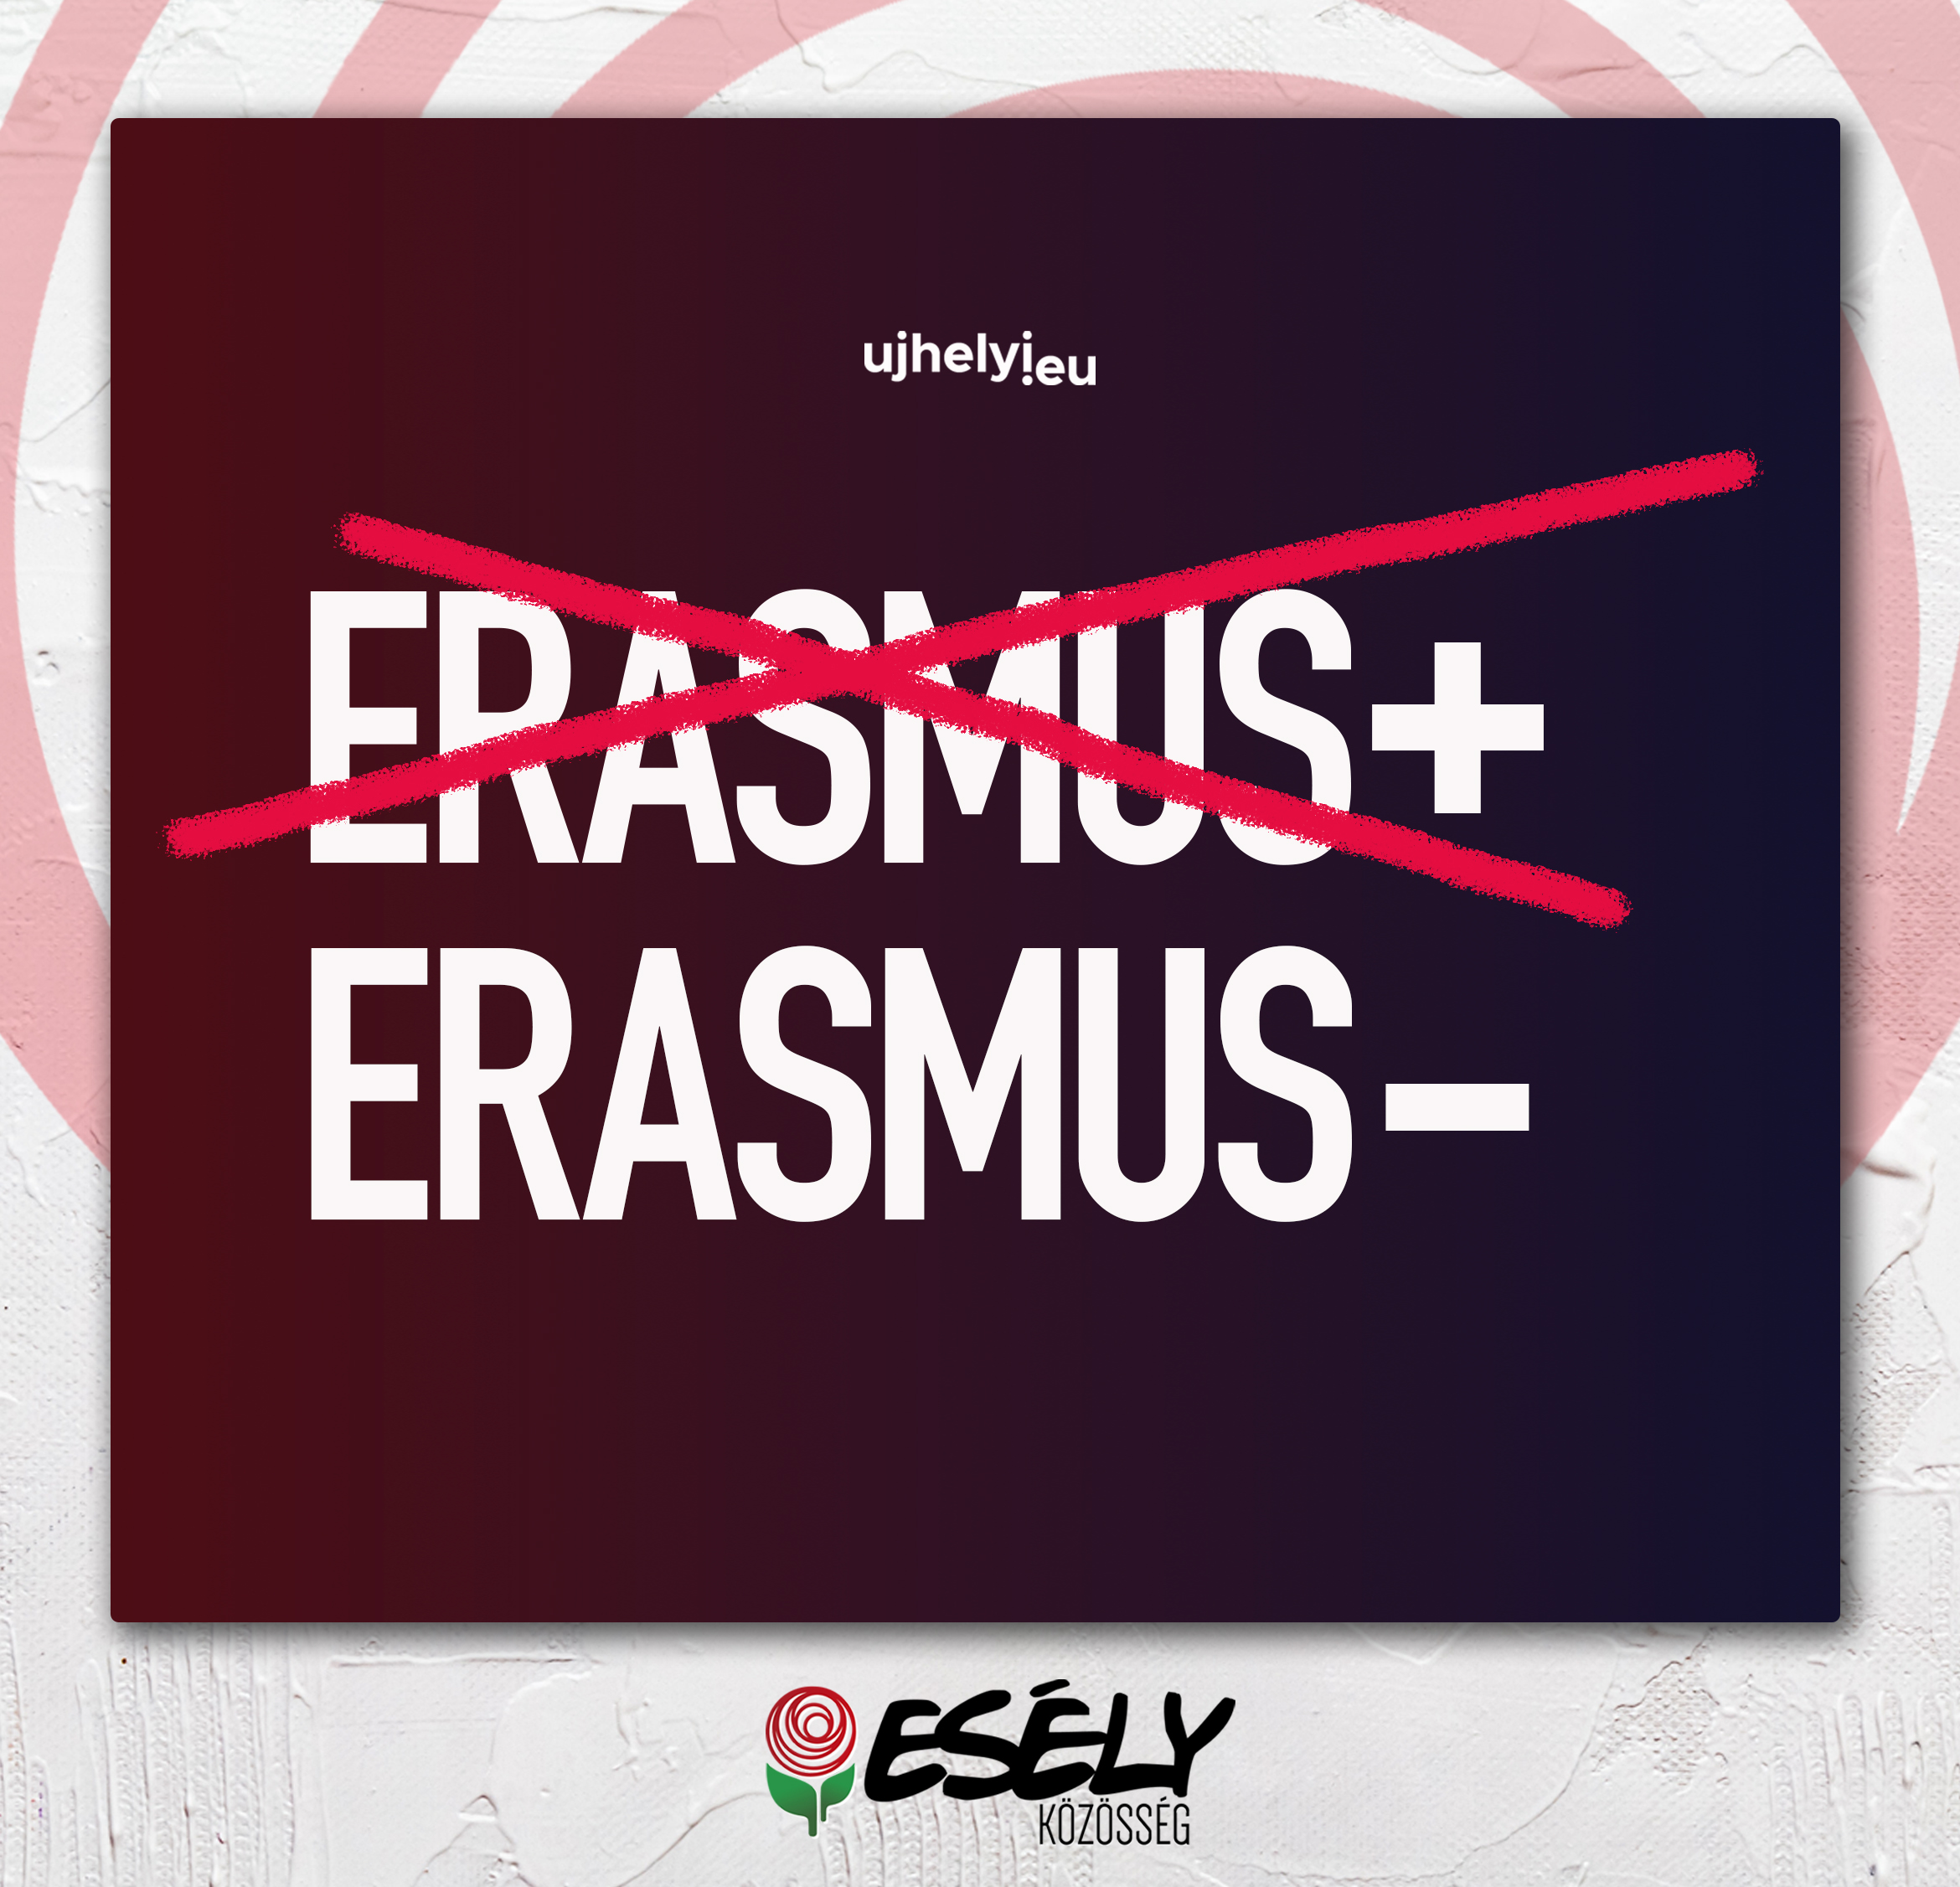 Ujhelyi kompenzációt kér az Európai Bizottságtól a kárt szenvedő Erasmus-diákoknak